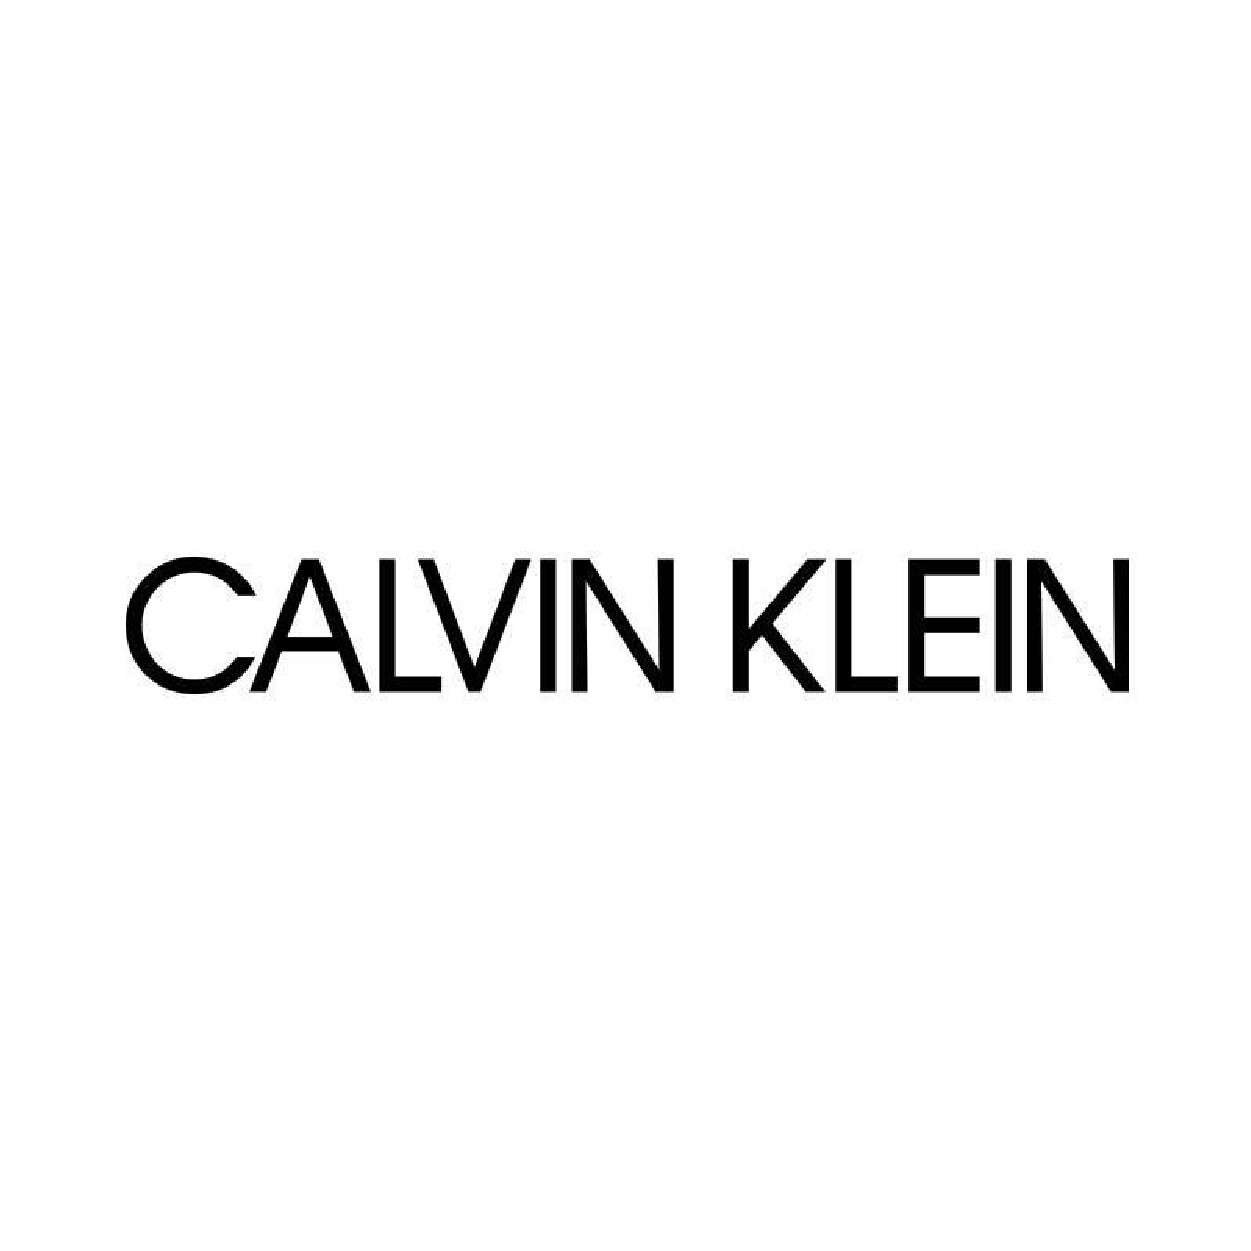 Communication digitale pour boutique de mode CALVIN KLEIN - Lyon